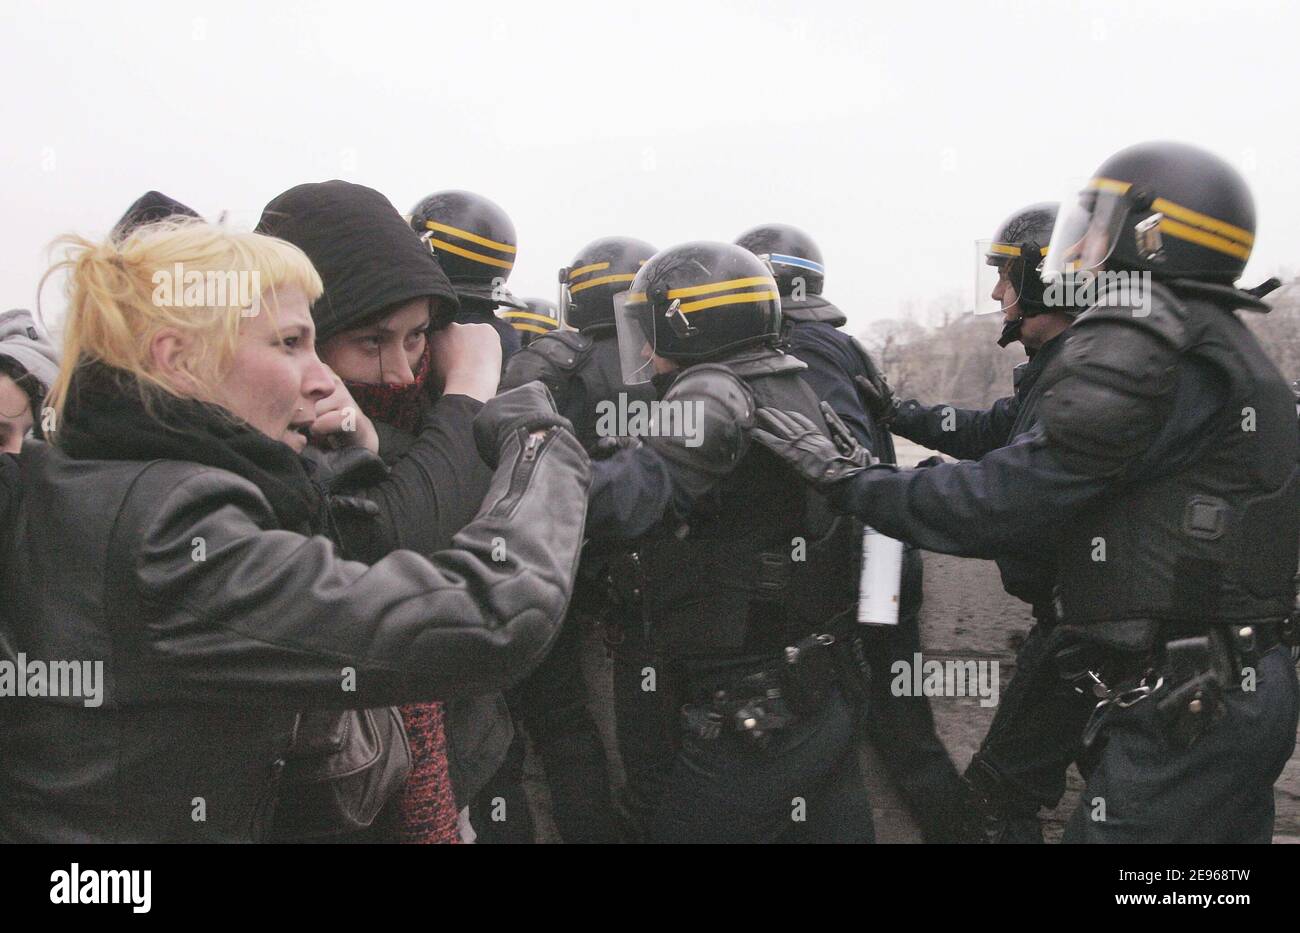 Violente rivolte tra i giovani e le forze di polizia avvengono a parte anti-CPE studenti dimostrazione nei pressi di Piazza Invalides a Parigi, Francia il 23 marzo 2006. Foto di Taamallah-Mousse/ABACAPRESS.COM Foto Stock